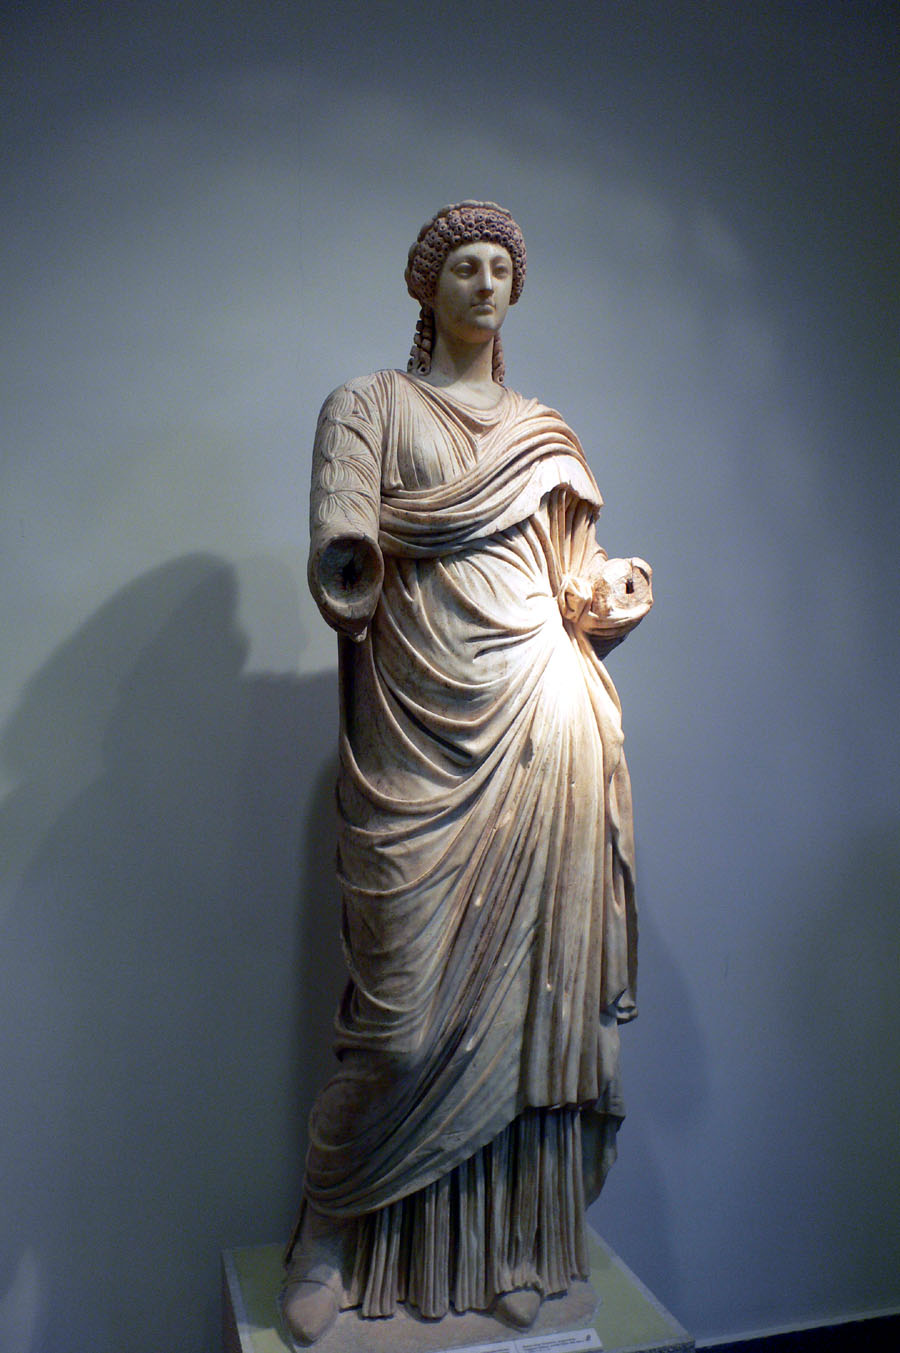 פסל של פופיאה סבינה, אשתו של הקיסר נירון, עמה נפגש יוסף בביקורו ברומא בהיותו בן 26. הפסל מוצג במוזאון לארכאולוגיה של אולימפיה, יוון